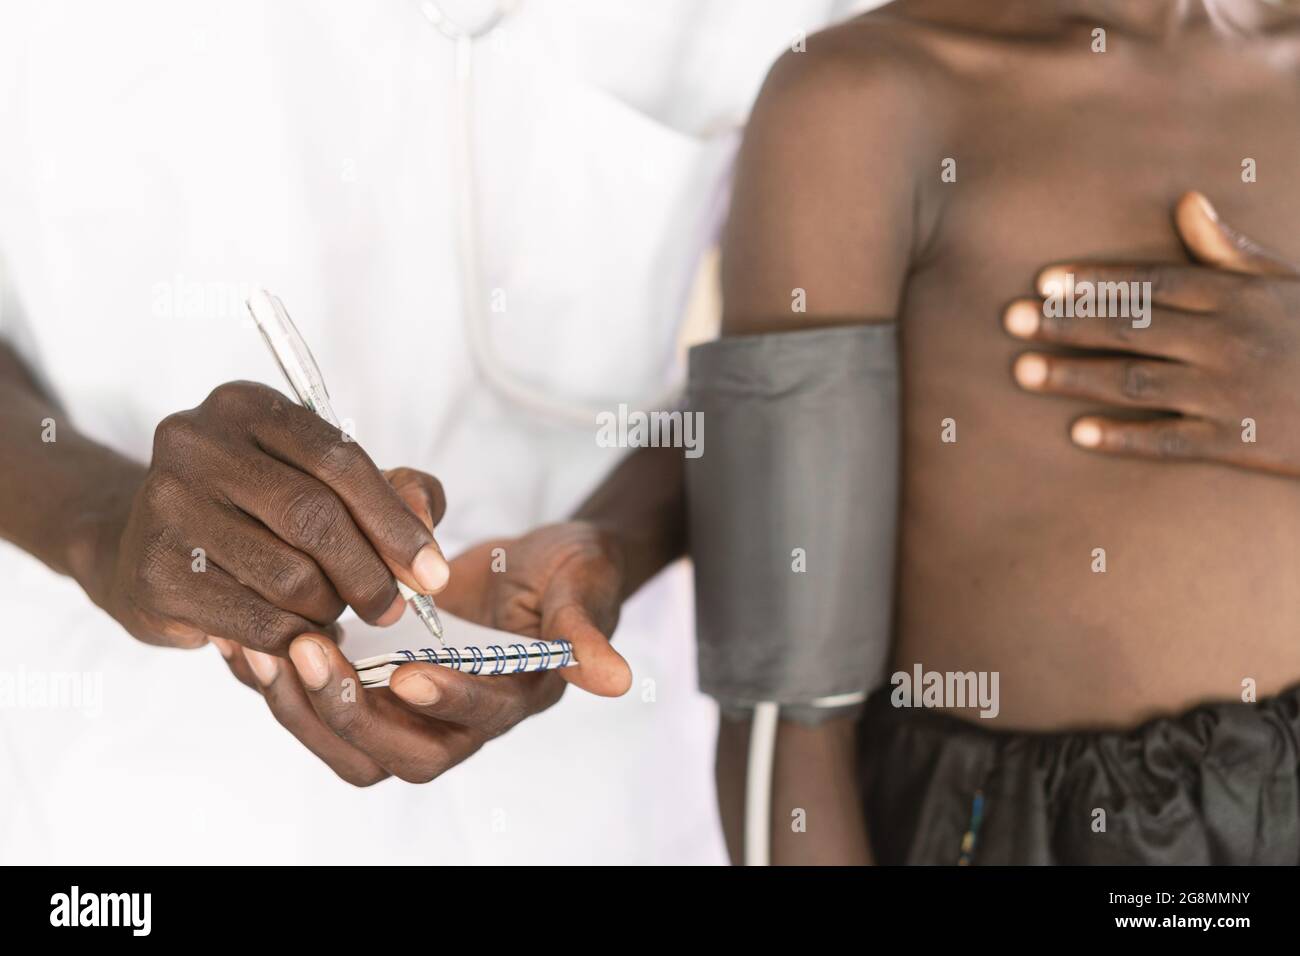 Questa immagine mostra un dispositivo di misurazione della pressione sanguigna sul braccio superiore destro di un piccolo bambino africano skinny con la mano sul petto in piedi accanto a. Foto Stock